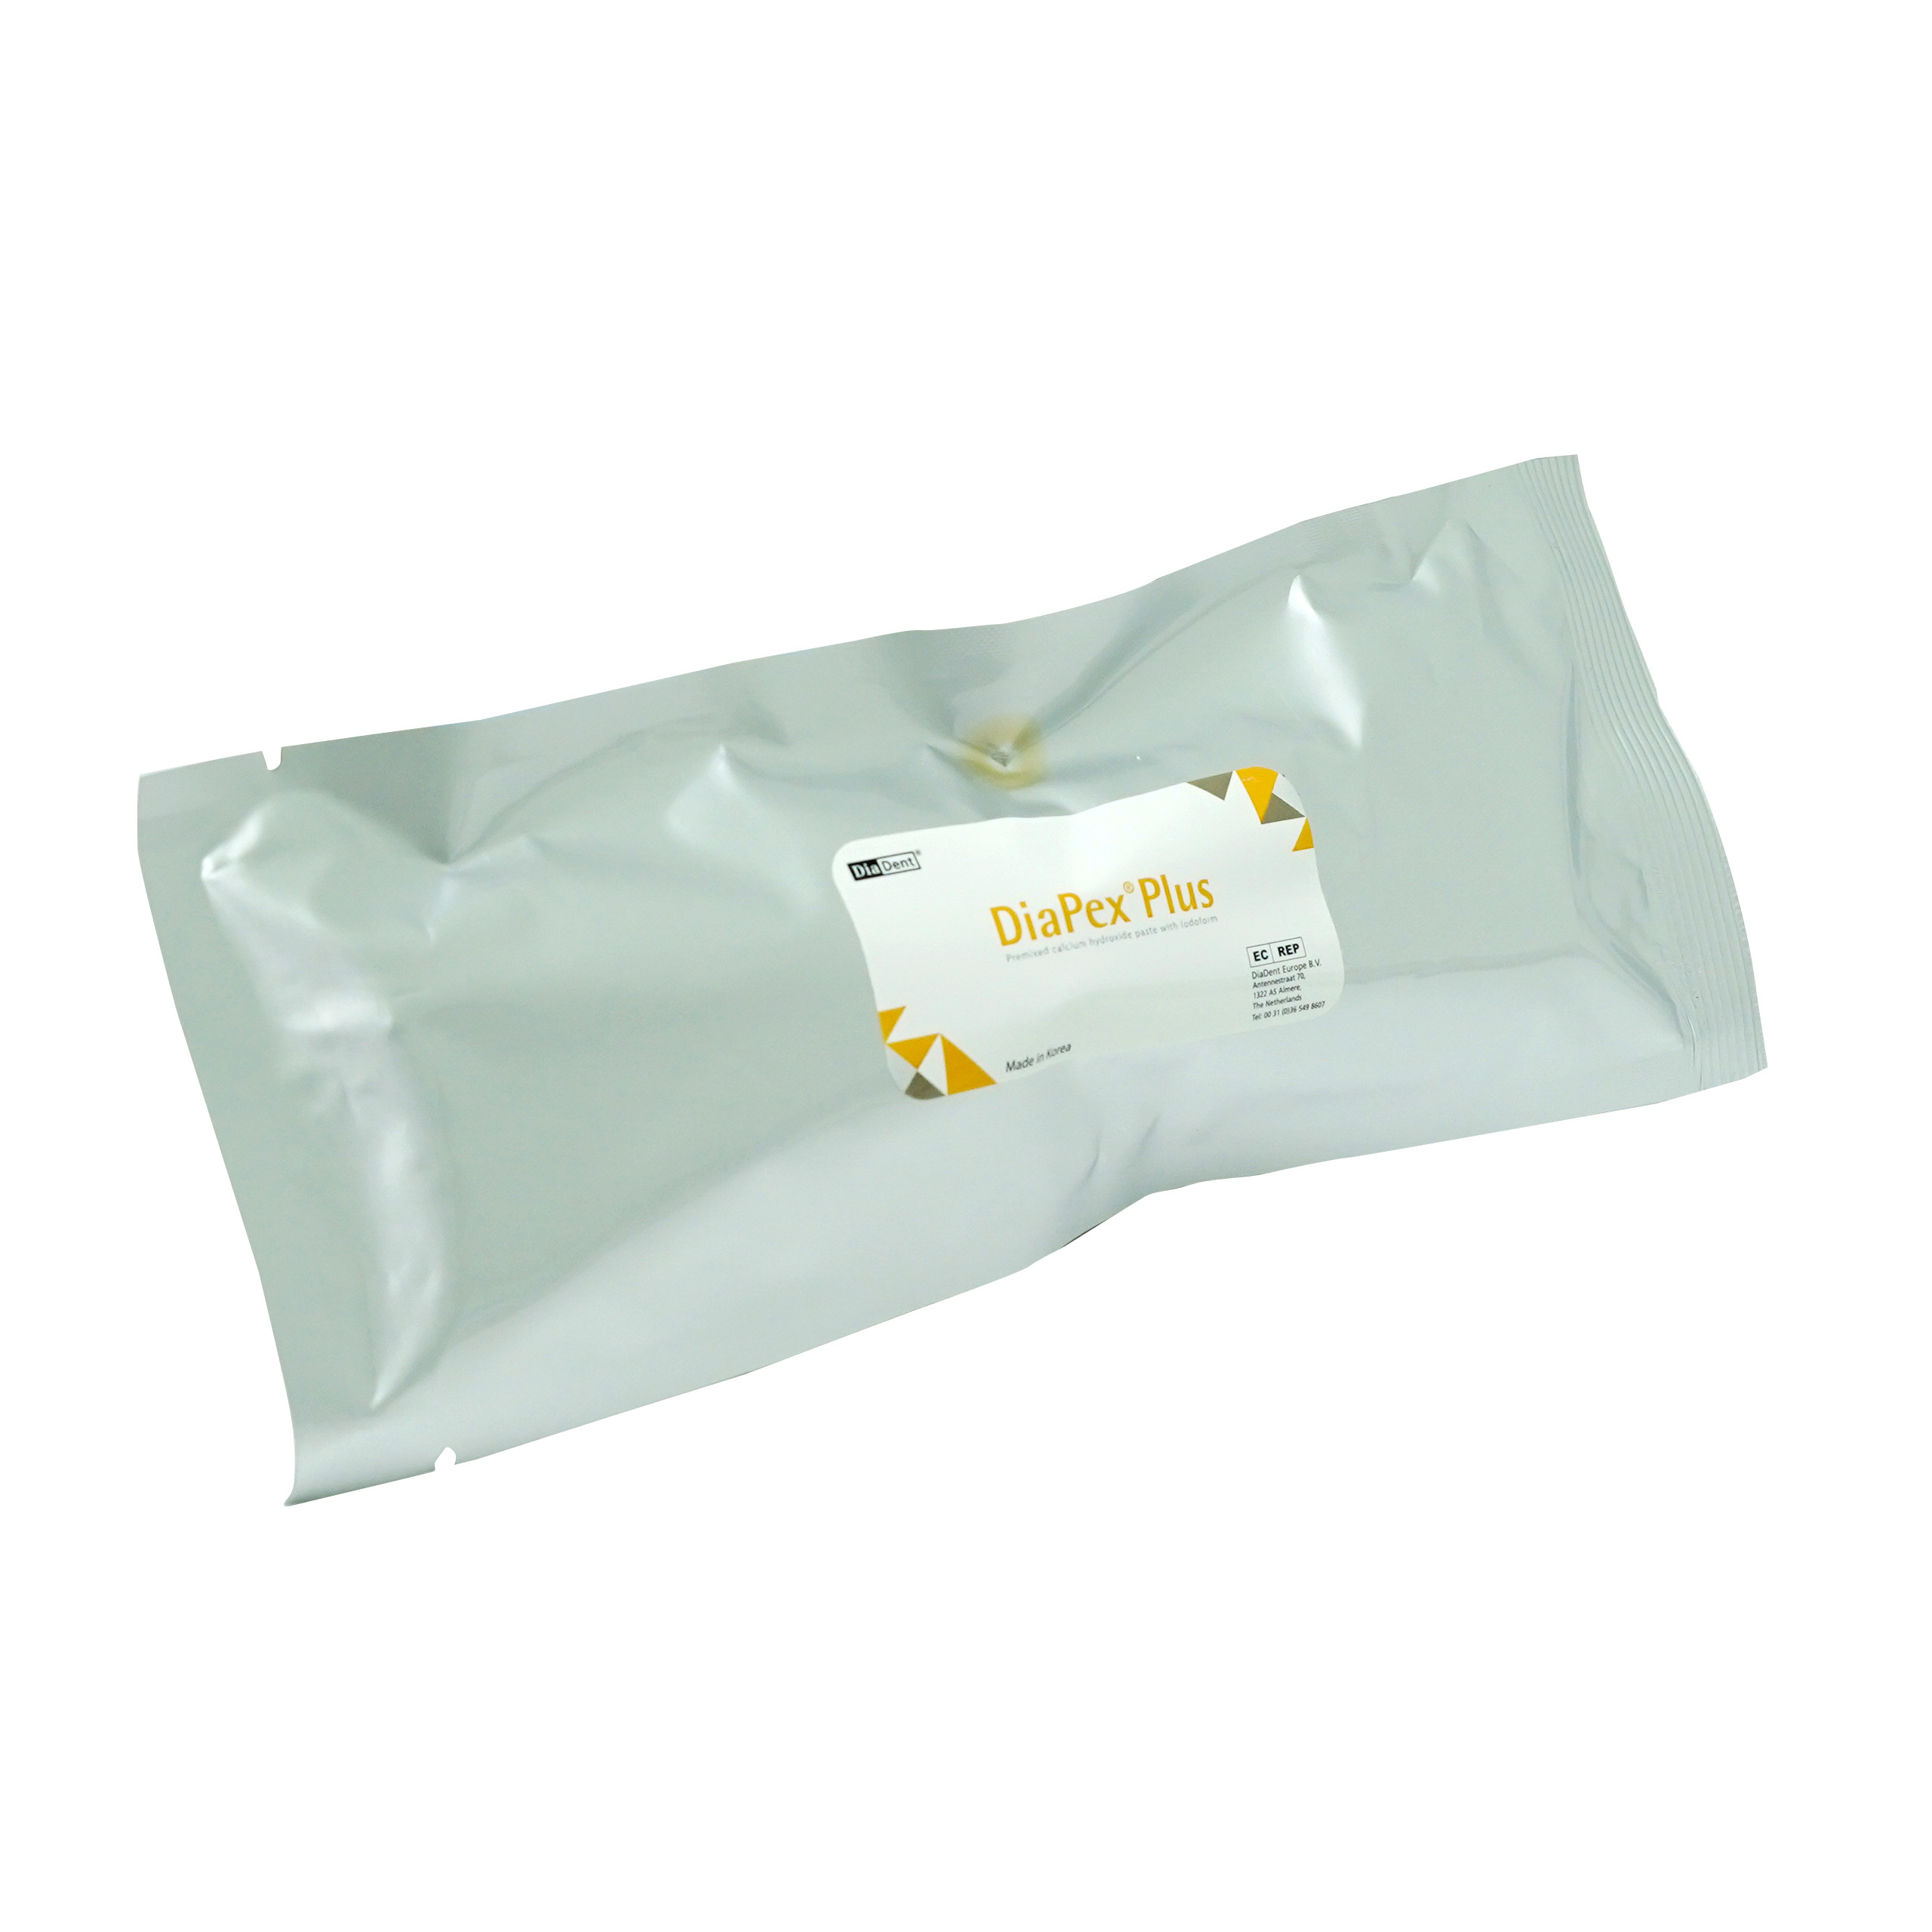 Diadent Diapex Plus Calcium Hydroxide 2x2gm Paste